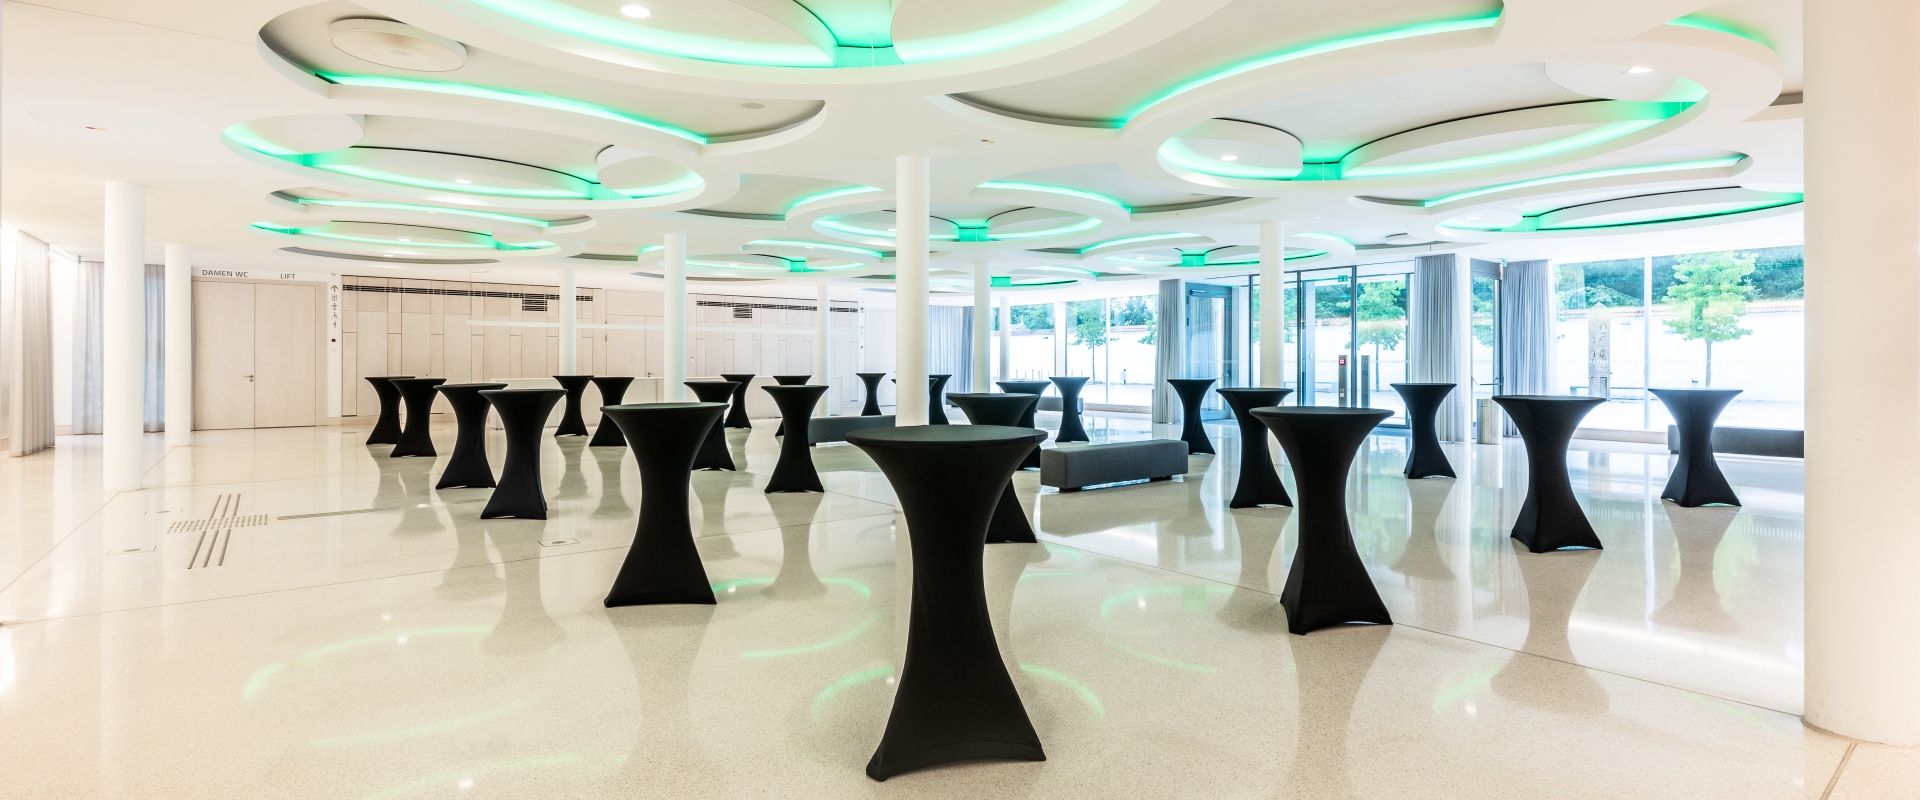 Das Foyer Abends im Forum Altötting, mit Stehtischen, die schwarze Hussen tragen und grüner Beleuchtung.